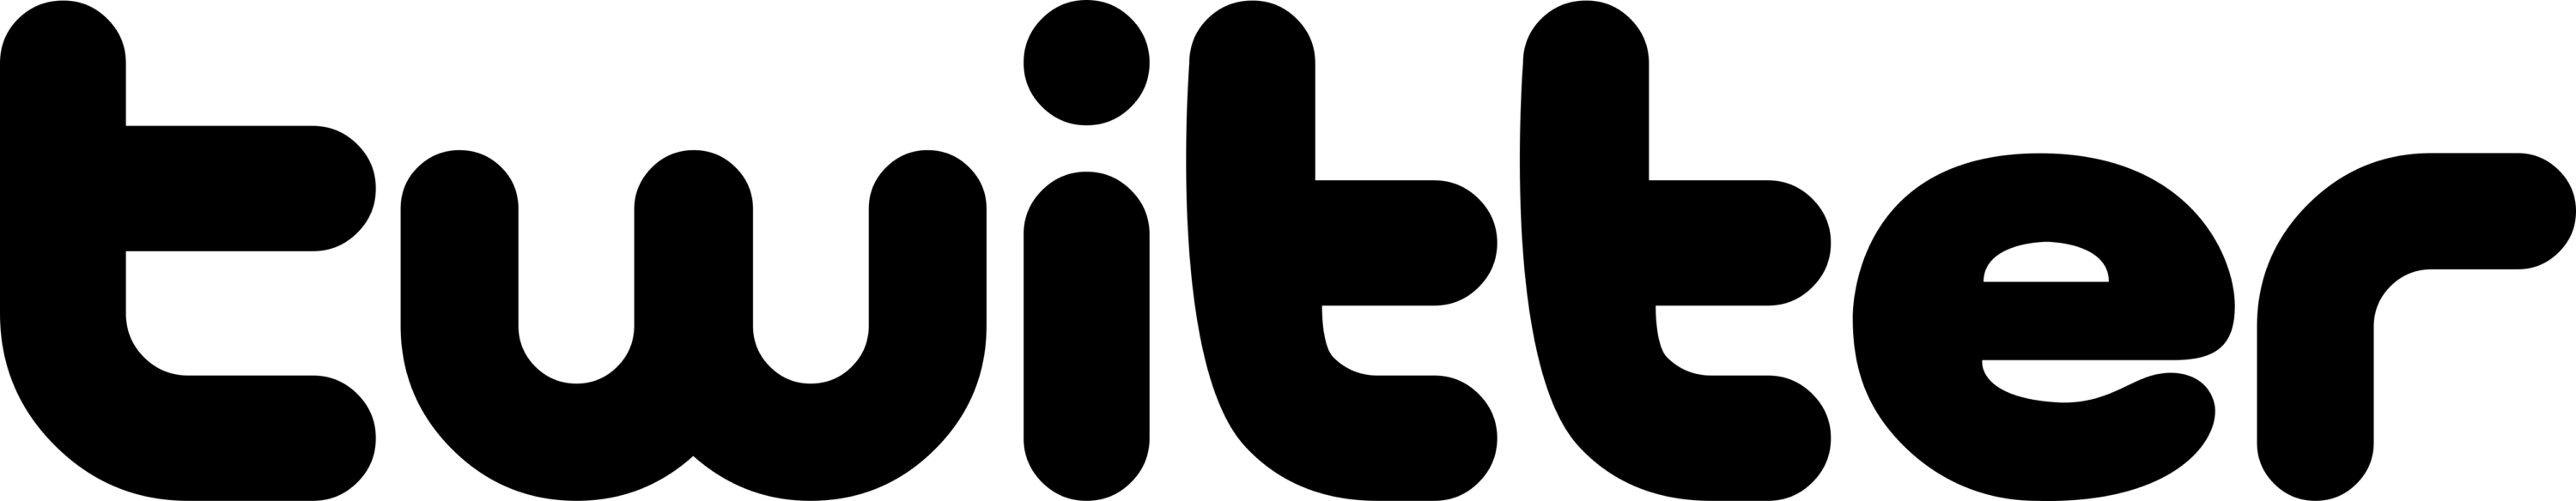 Twitter print variant Logo 2006